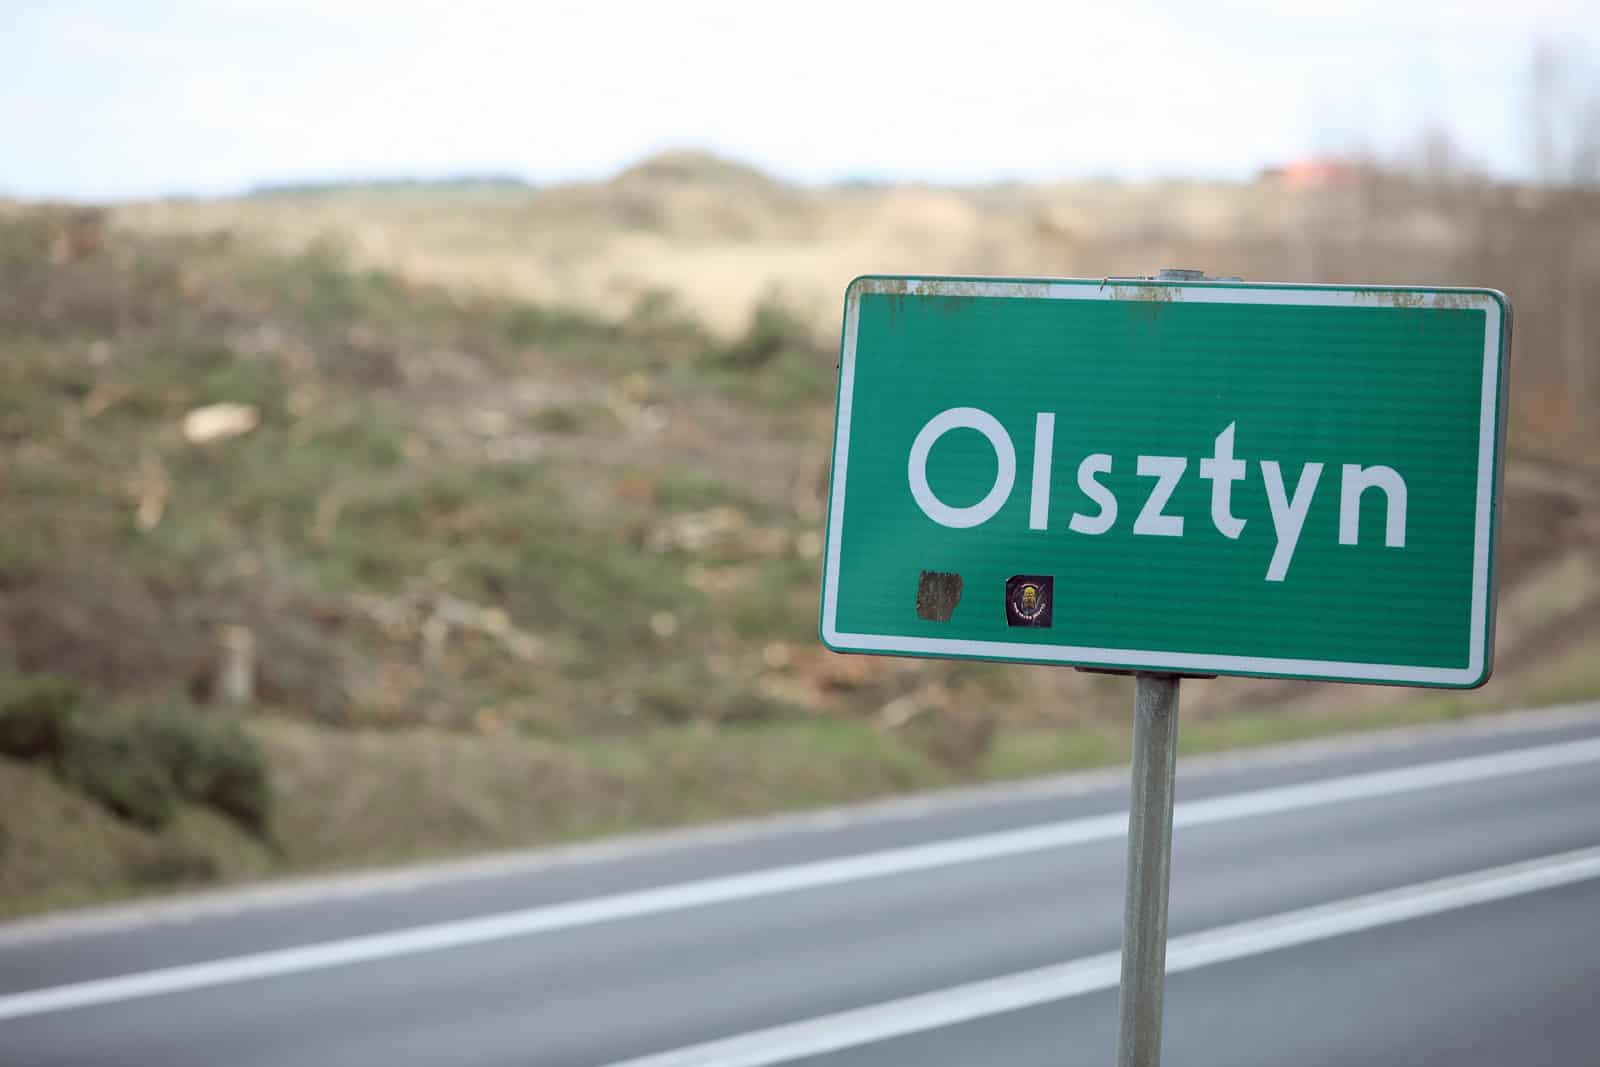 Jaka jest "najdłuższa" nazwa miejscowości w warmińsko-mazurskim? nieruchomości Olsztyn, Wiadomości, zShowcase